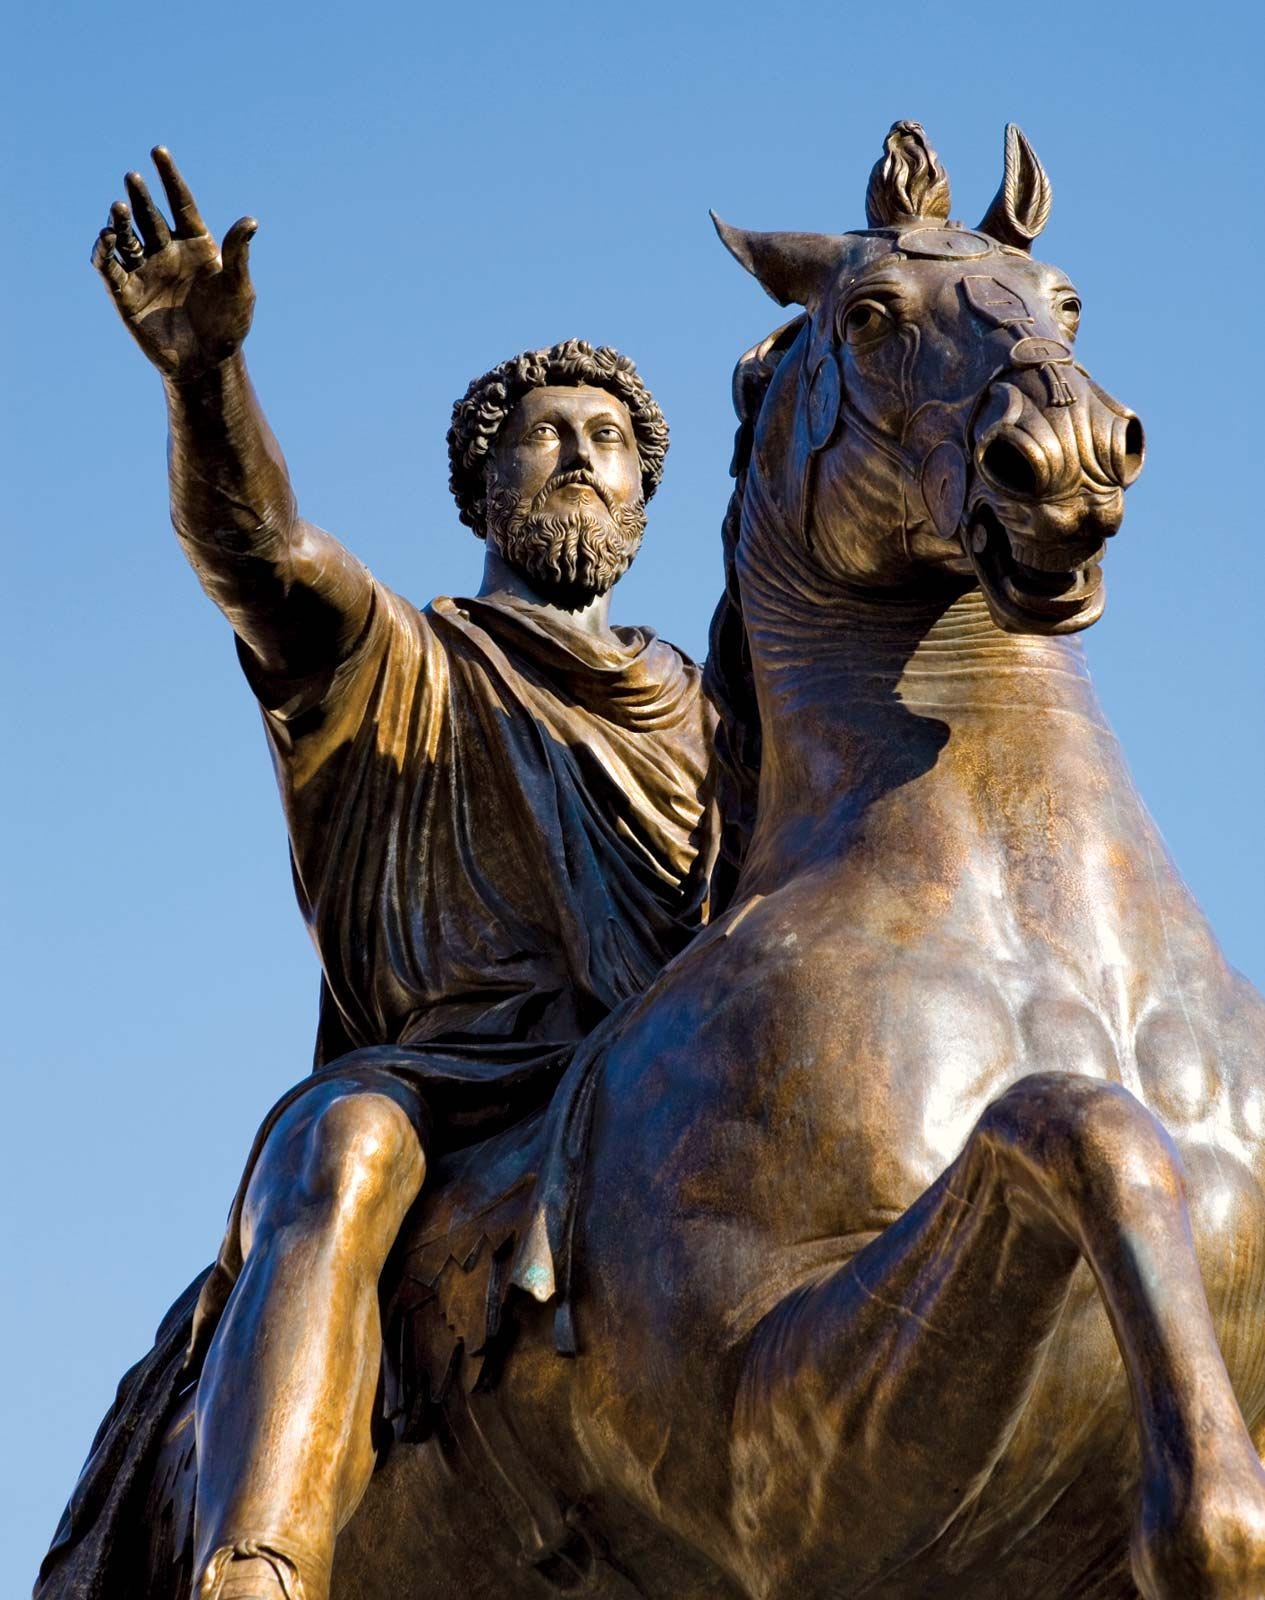 Marcus Aurelius | Biography, Meditations, & Facts | Britannica